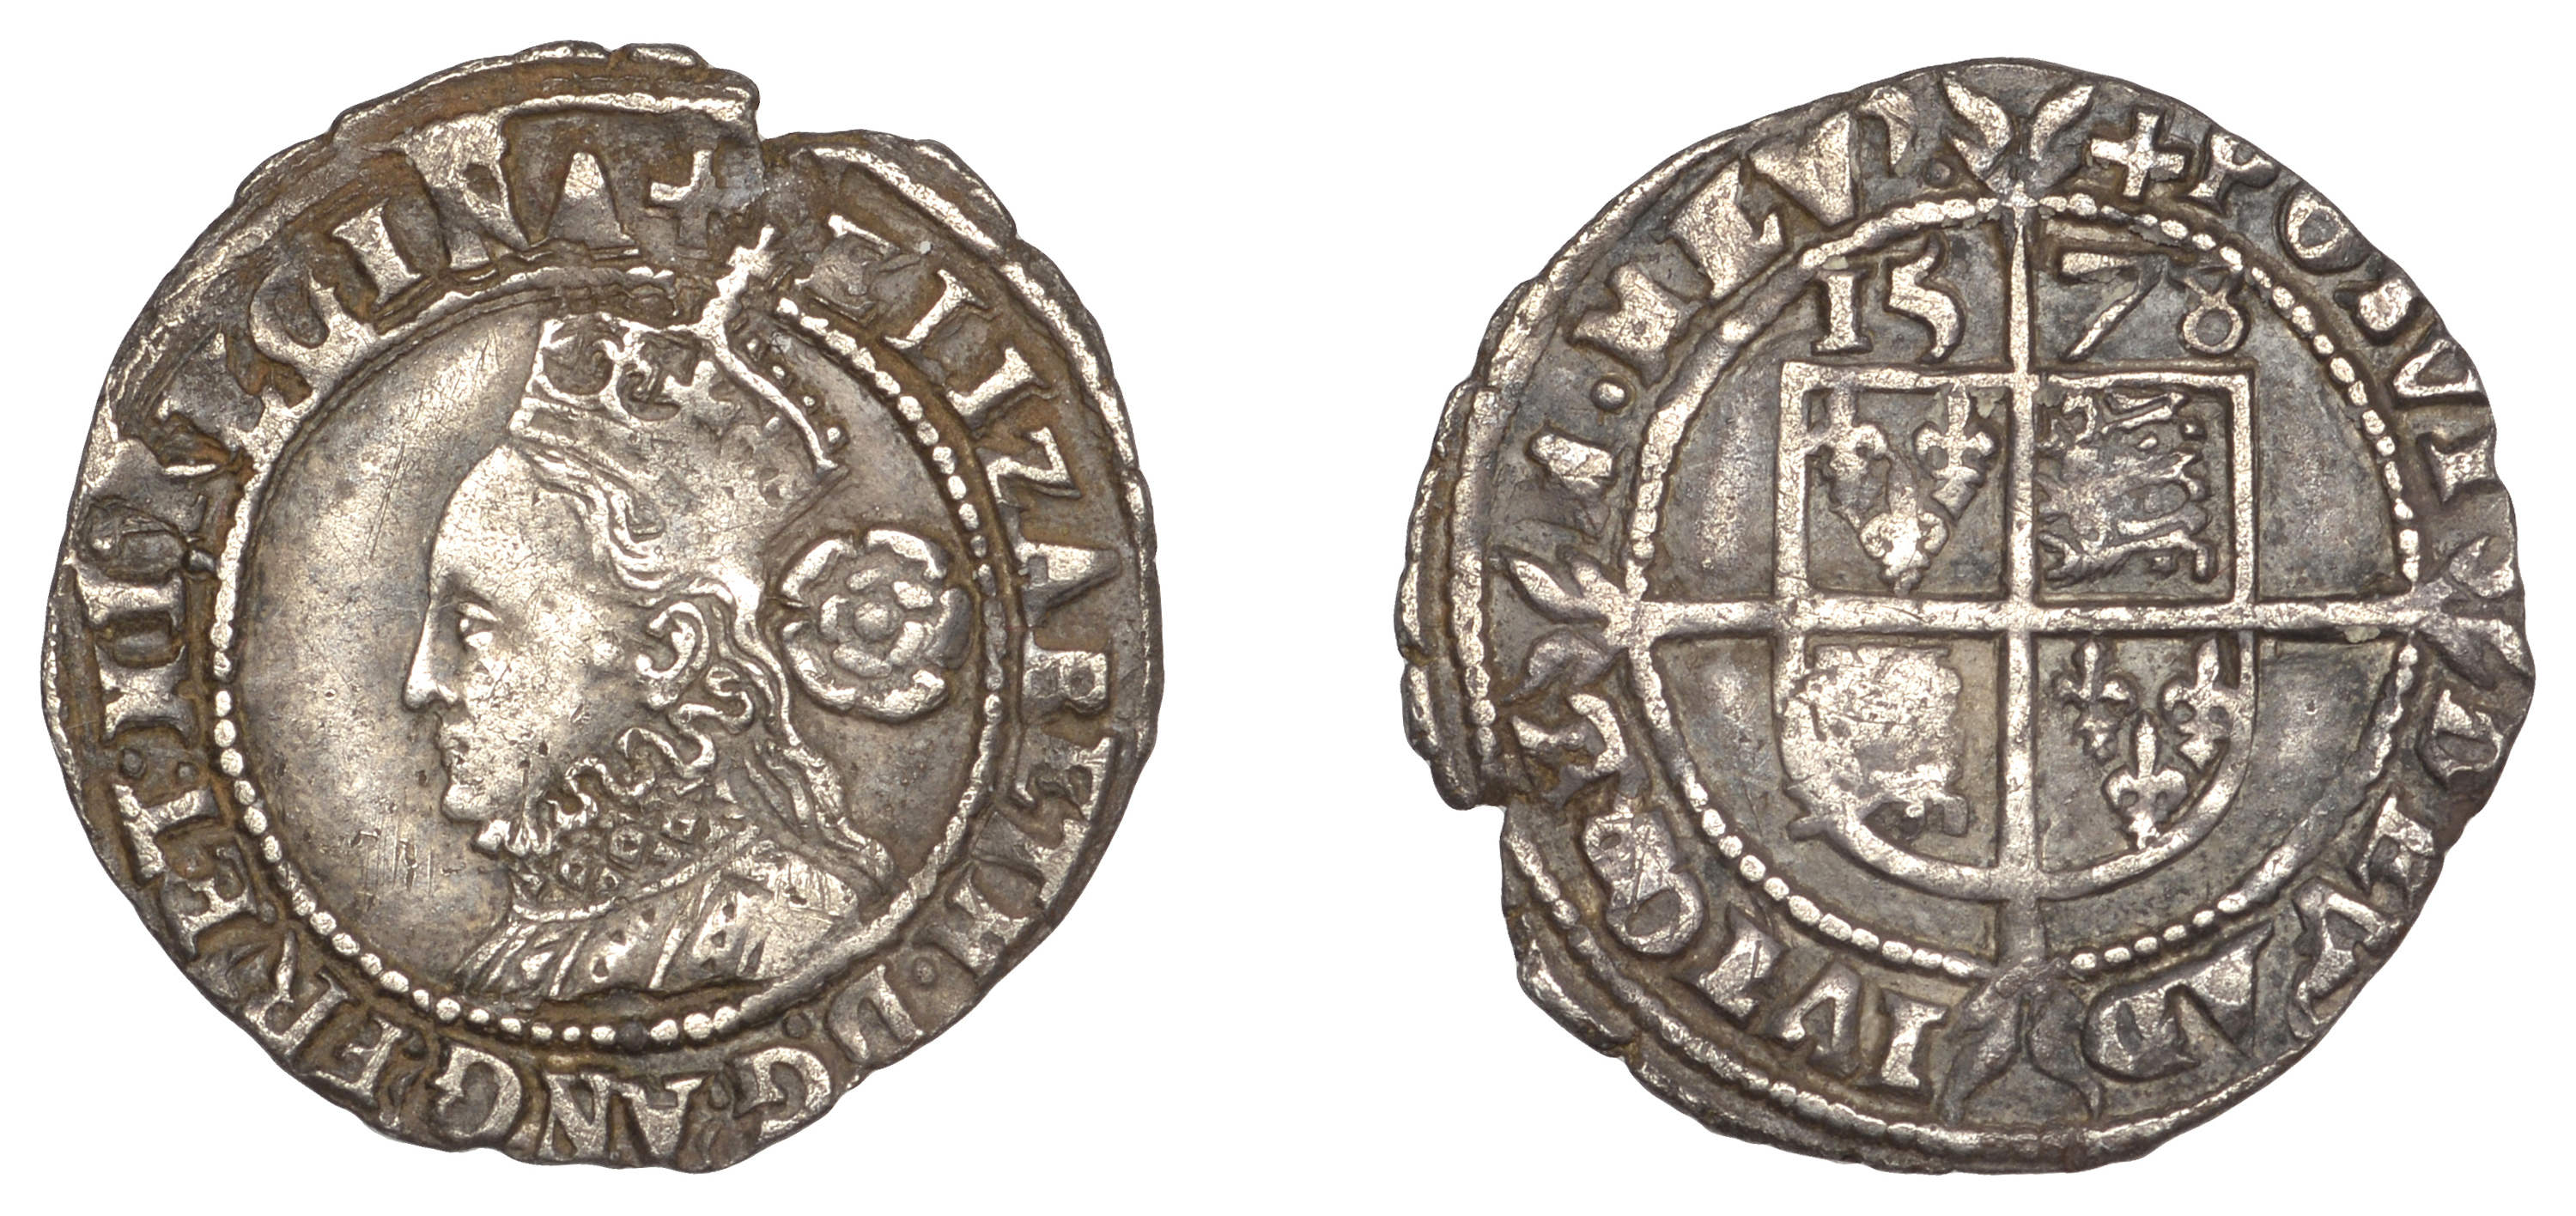 Elizabeth I (1558-1603), Fifth issue, Threepence, 1578, mm. Greek cross, 1.55g/3h (N 1998; S...